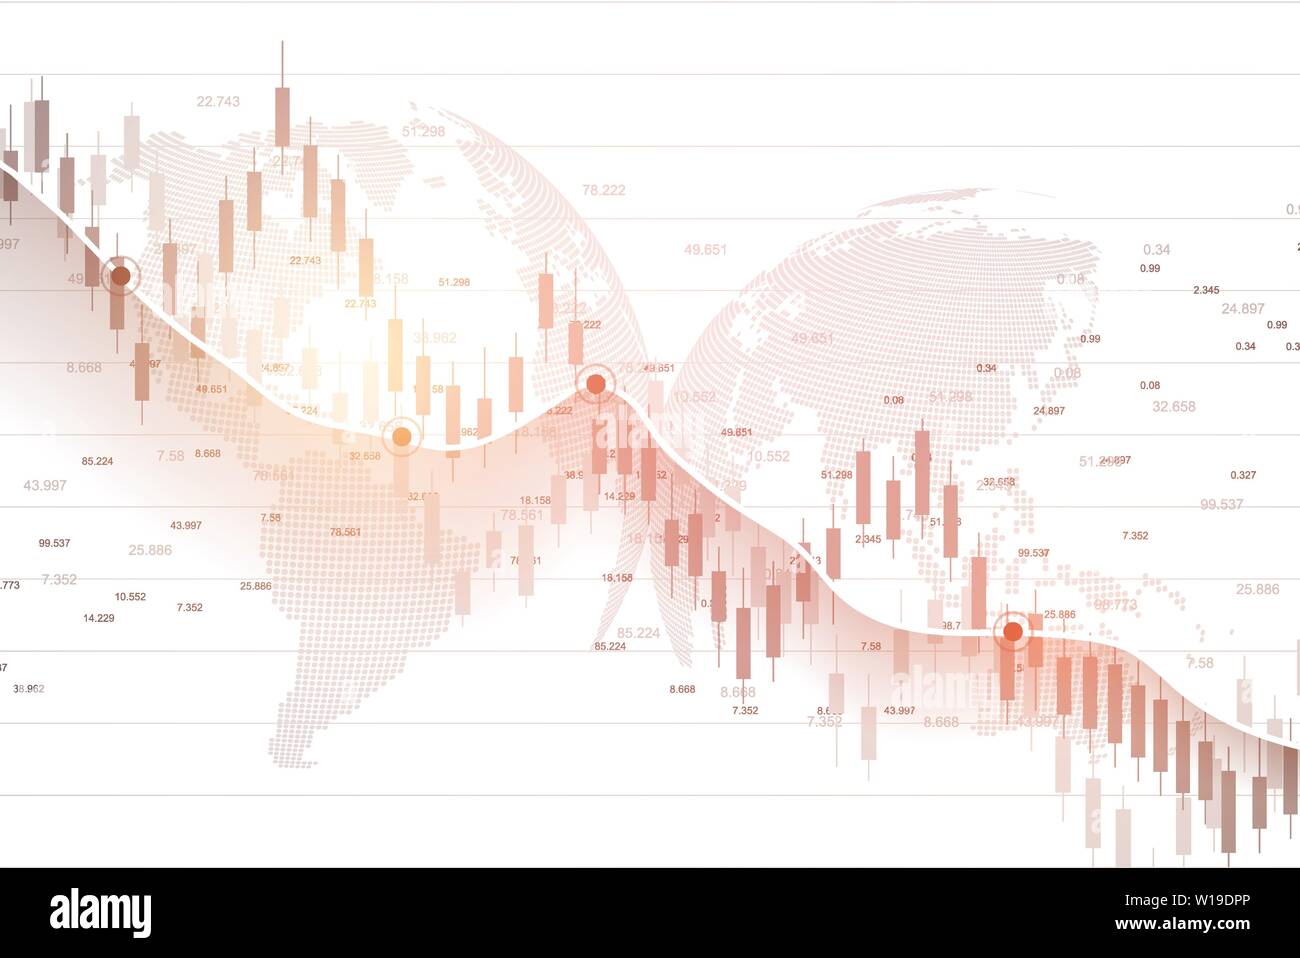 Börse Graph oder forex Chart für geschäftliche und finanzielle Konzepte. Abstrakte Finanzen Hintergrund Investitionen oder wirtschaftliche Trends Geschäftsidee Stock Vektor